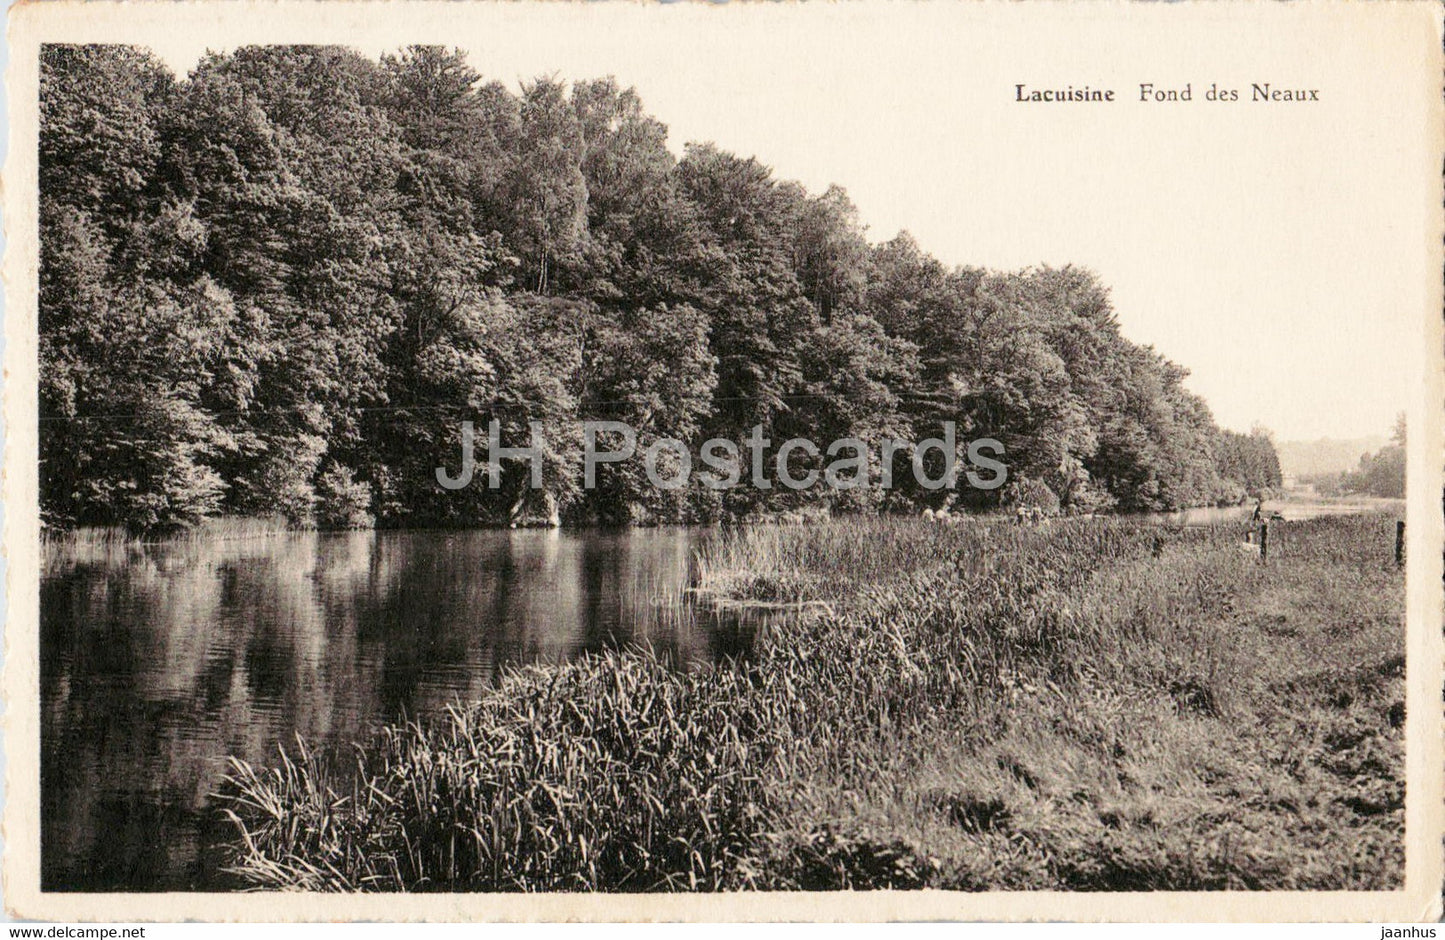 Lacuisine - Fond des Neaux - old postcard - Belgium - unused - JH Postcards